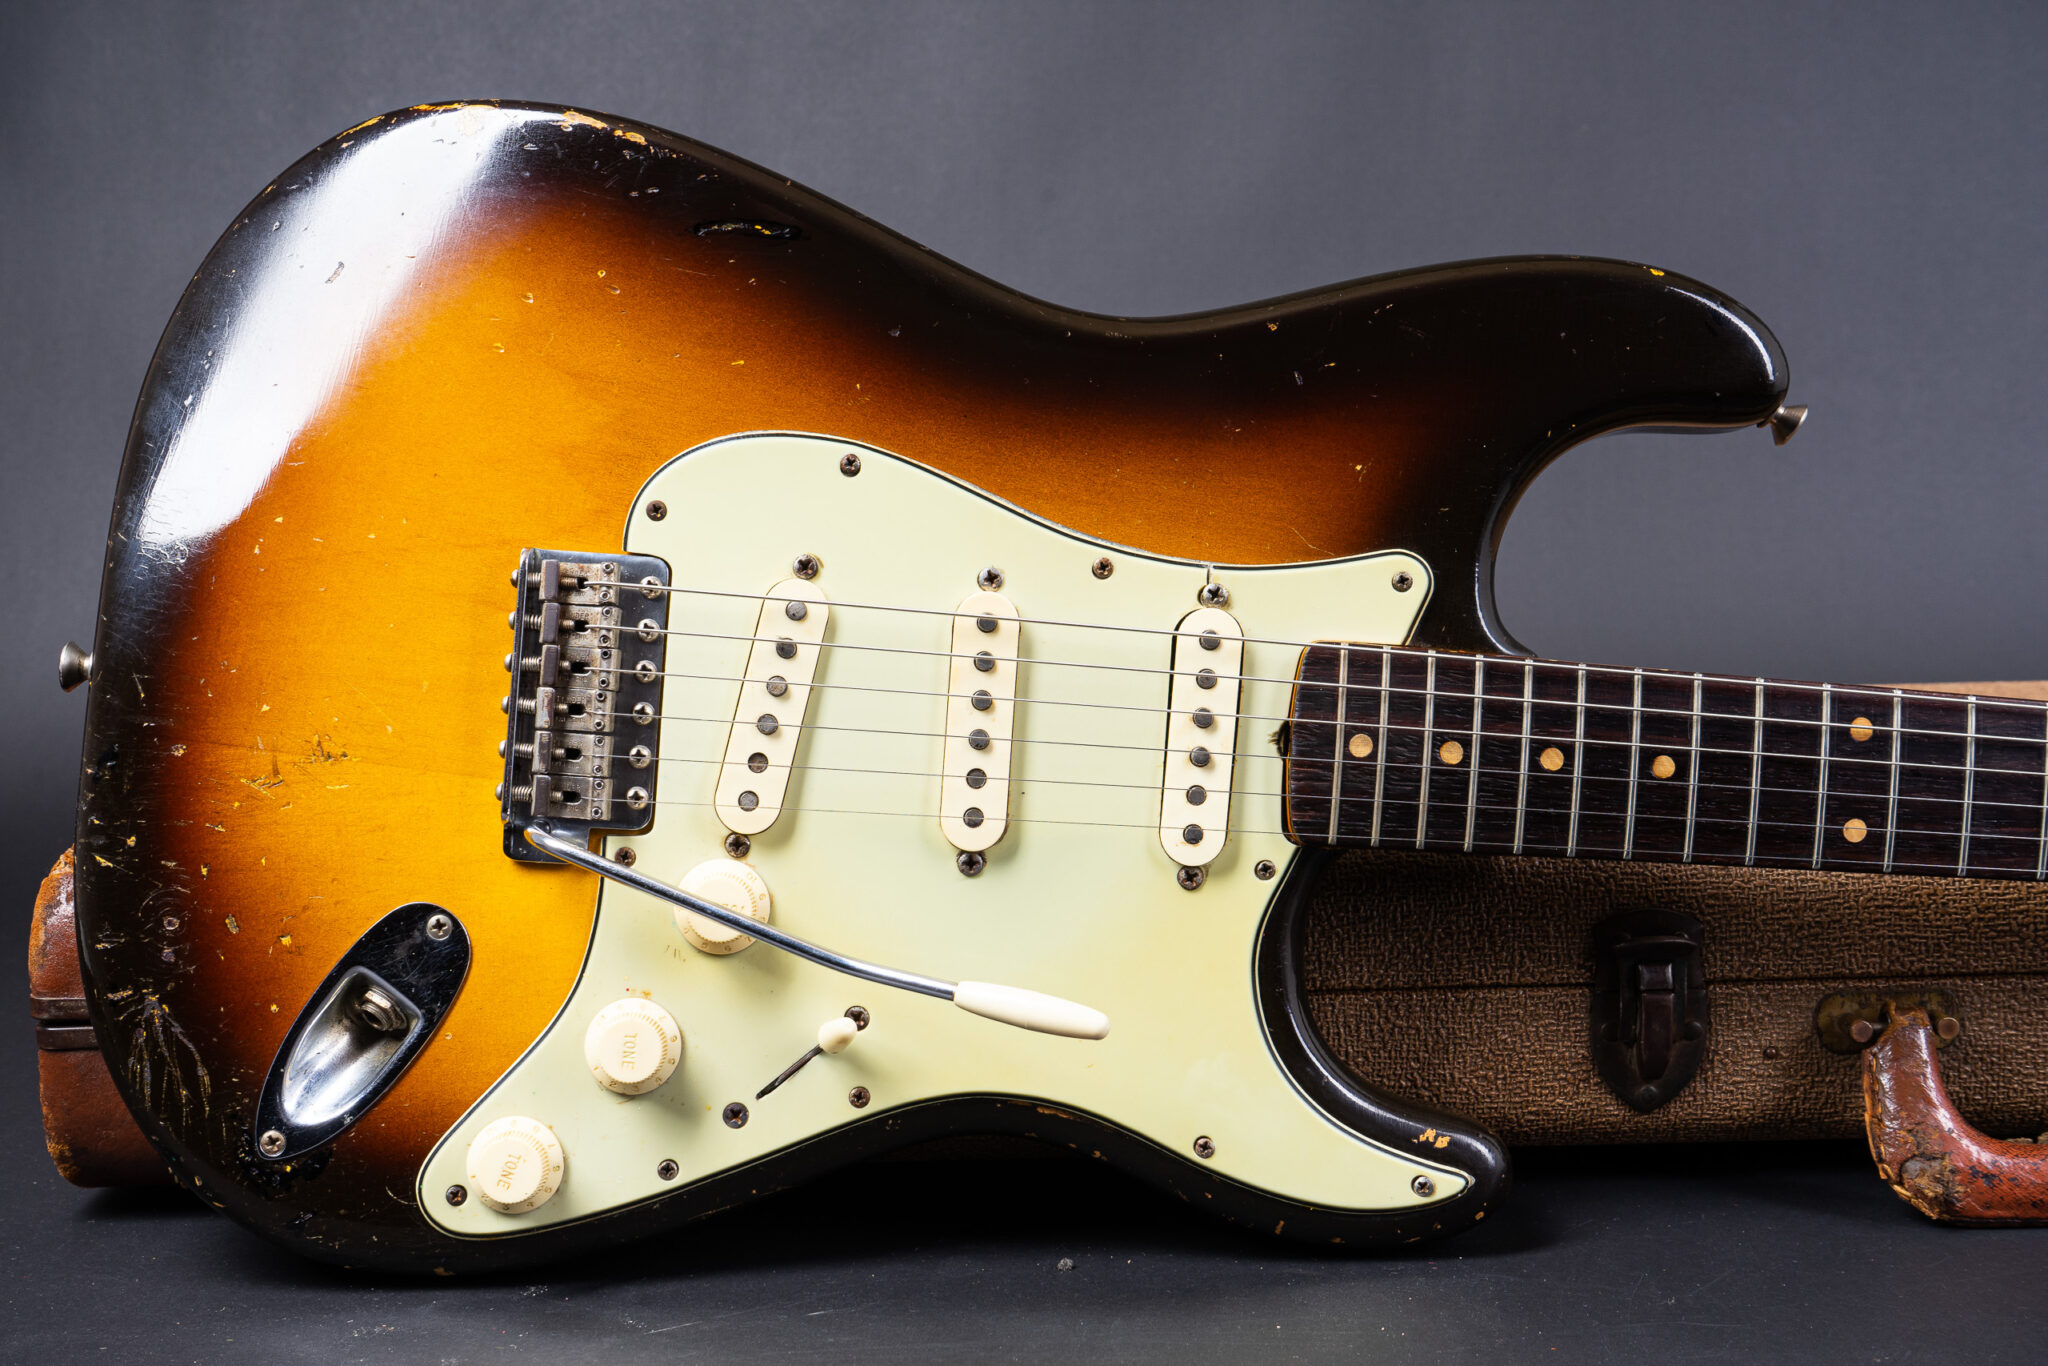 https://guitarpoint.de/app/uploads/products/1960-fender-stratocaster-sunburst-3/1960-Fender-Stratocaster-Sunburst-51347-10-2048x1366.jpg